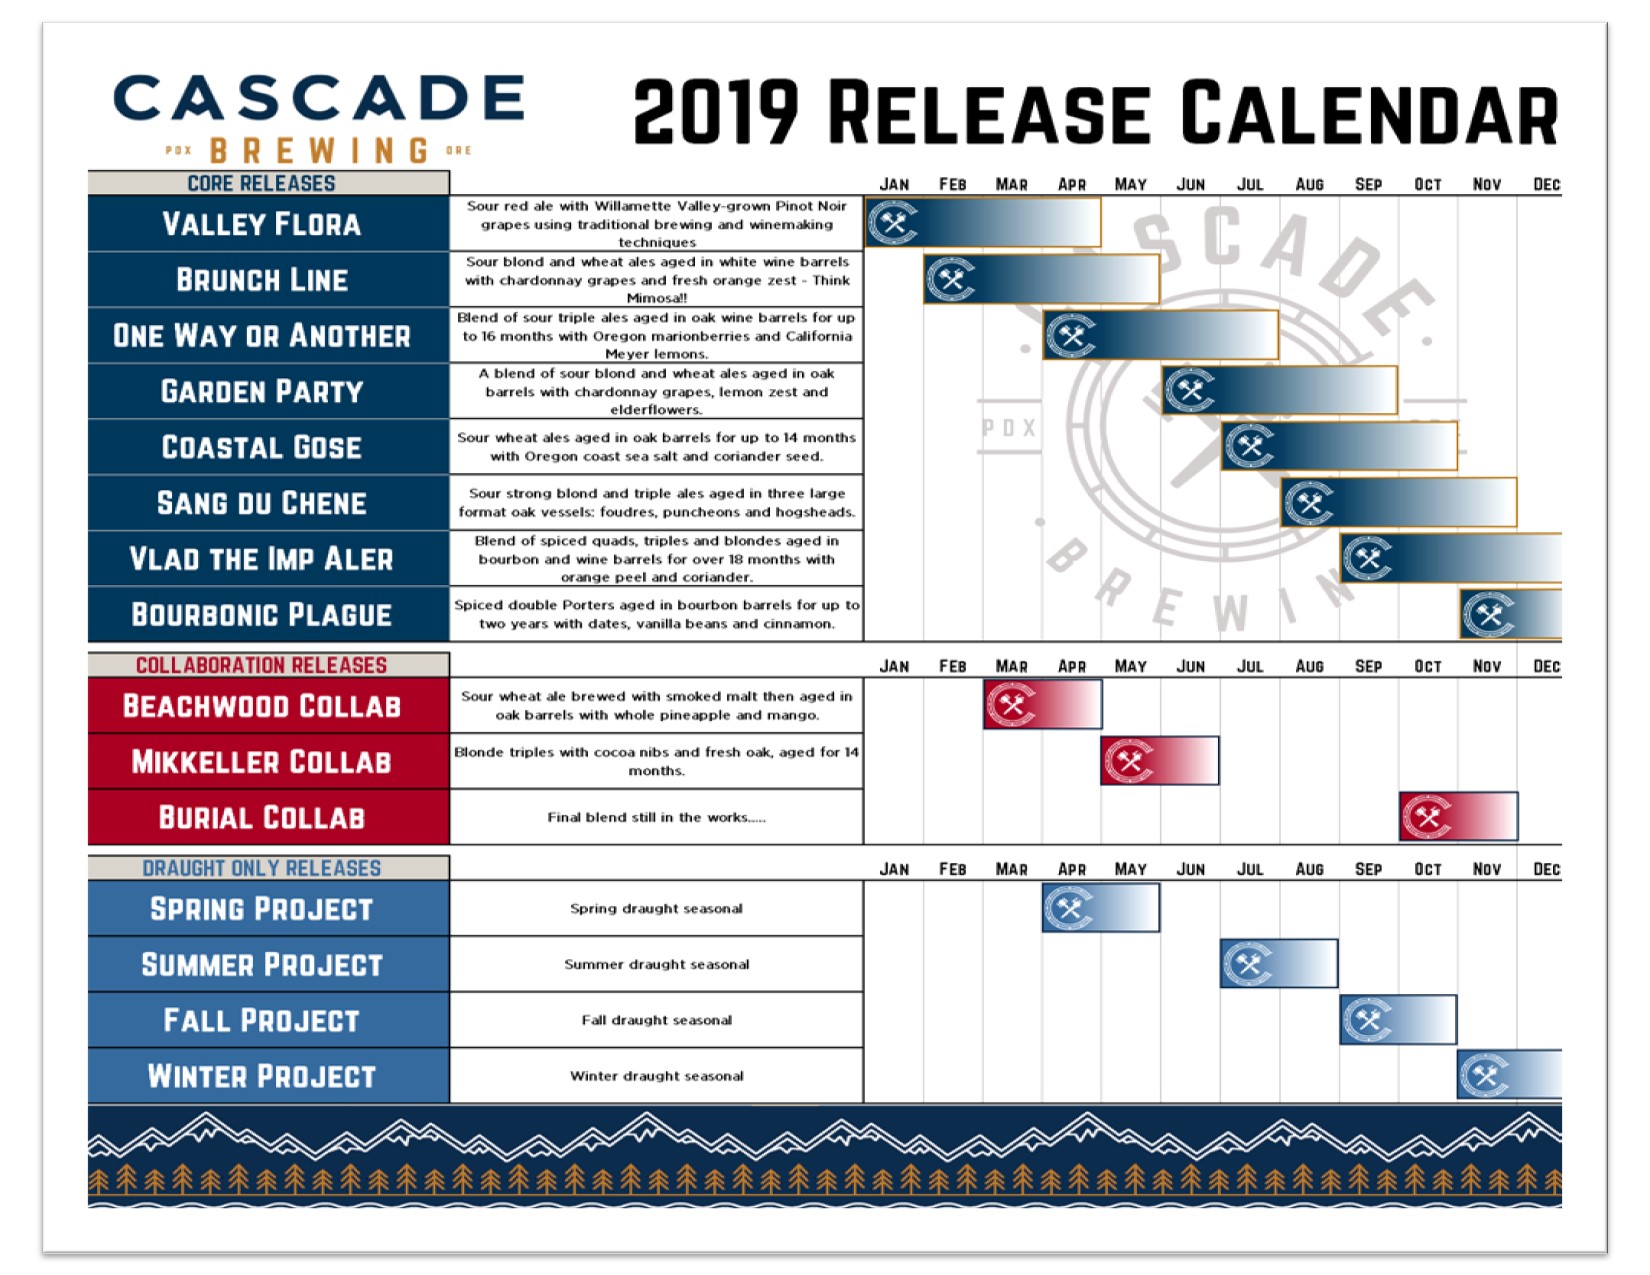 2019 Beer Release Calendar Roundup